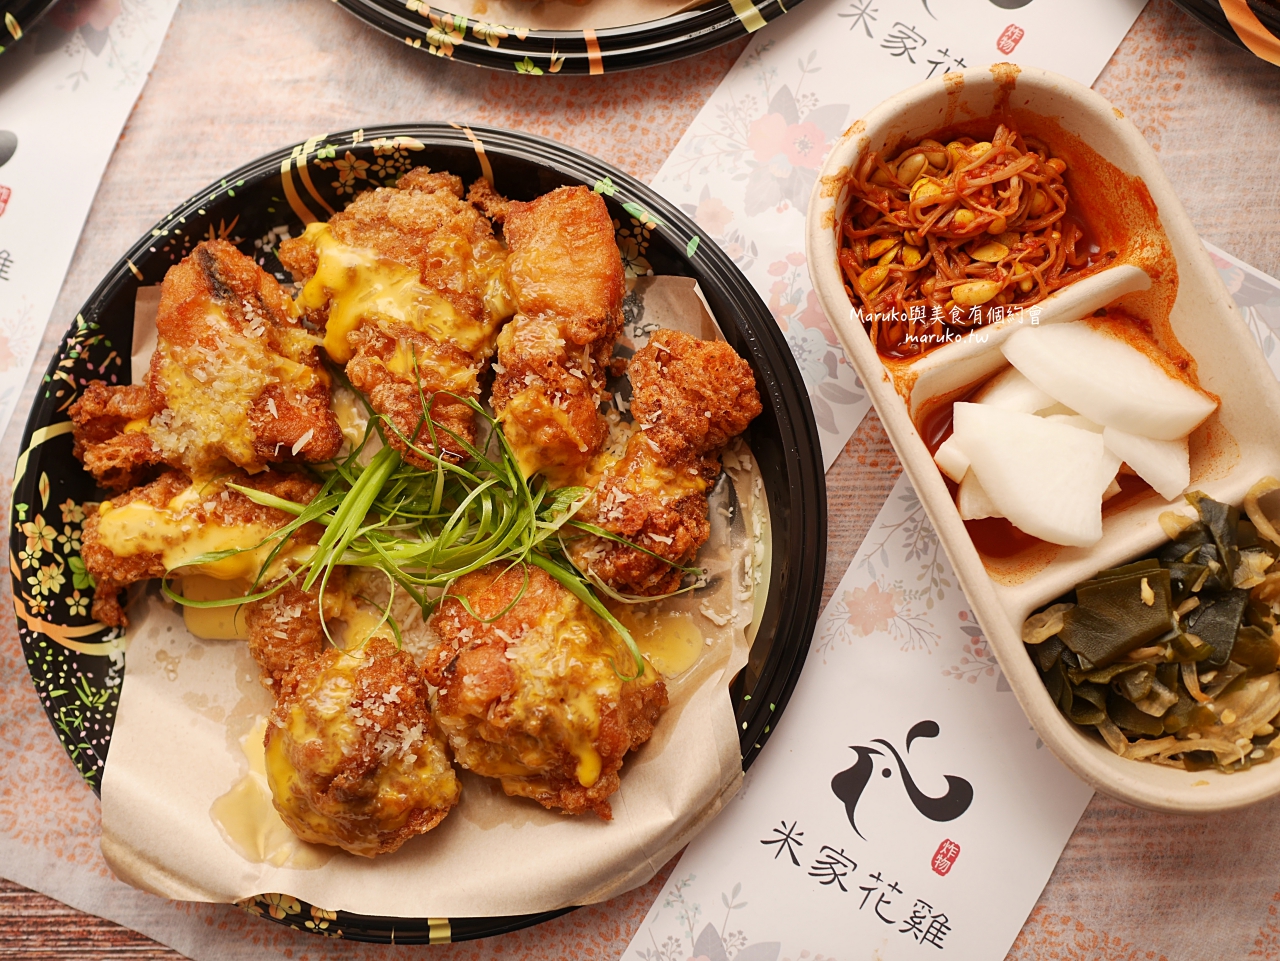 【台北】米家花雞 隱藏在巷弄內 要預約的日式炸雞 手工秘製醬汁 鹽麴醃製 外皮酥脆有肉汁